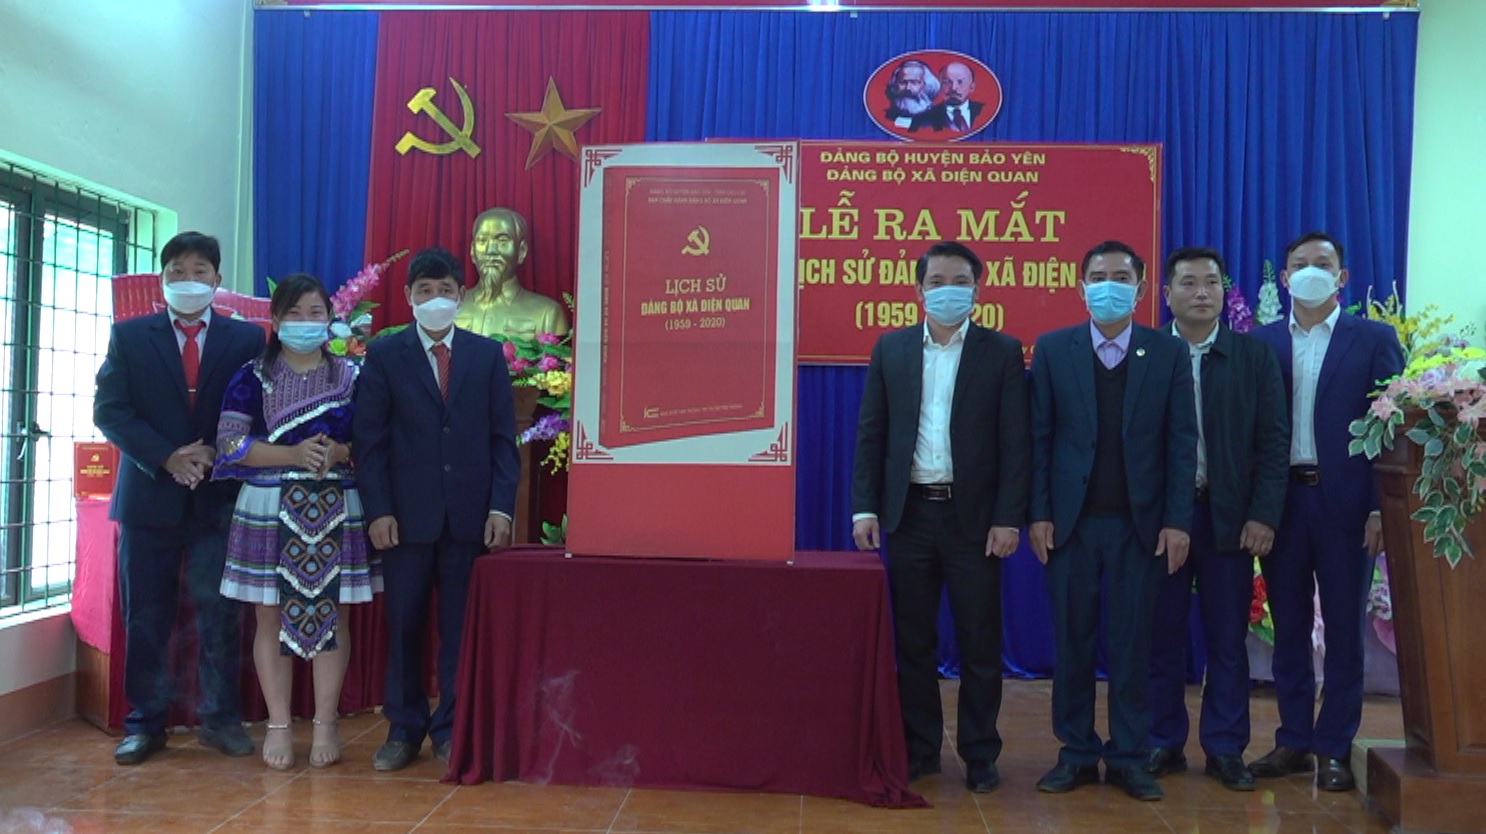 Ra mắt cuốn lịch sử Đảng bộ xã Điện Quan giai đoạn 1959 2020